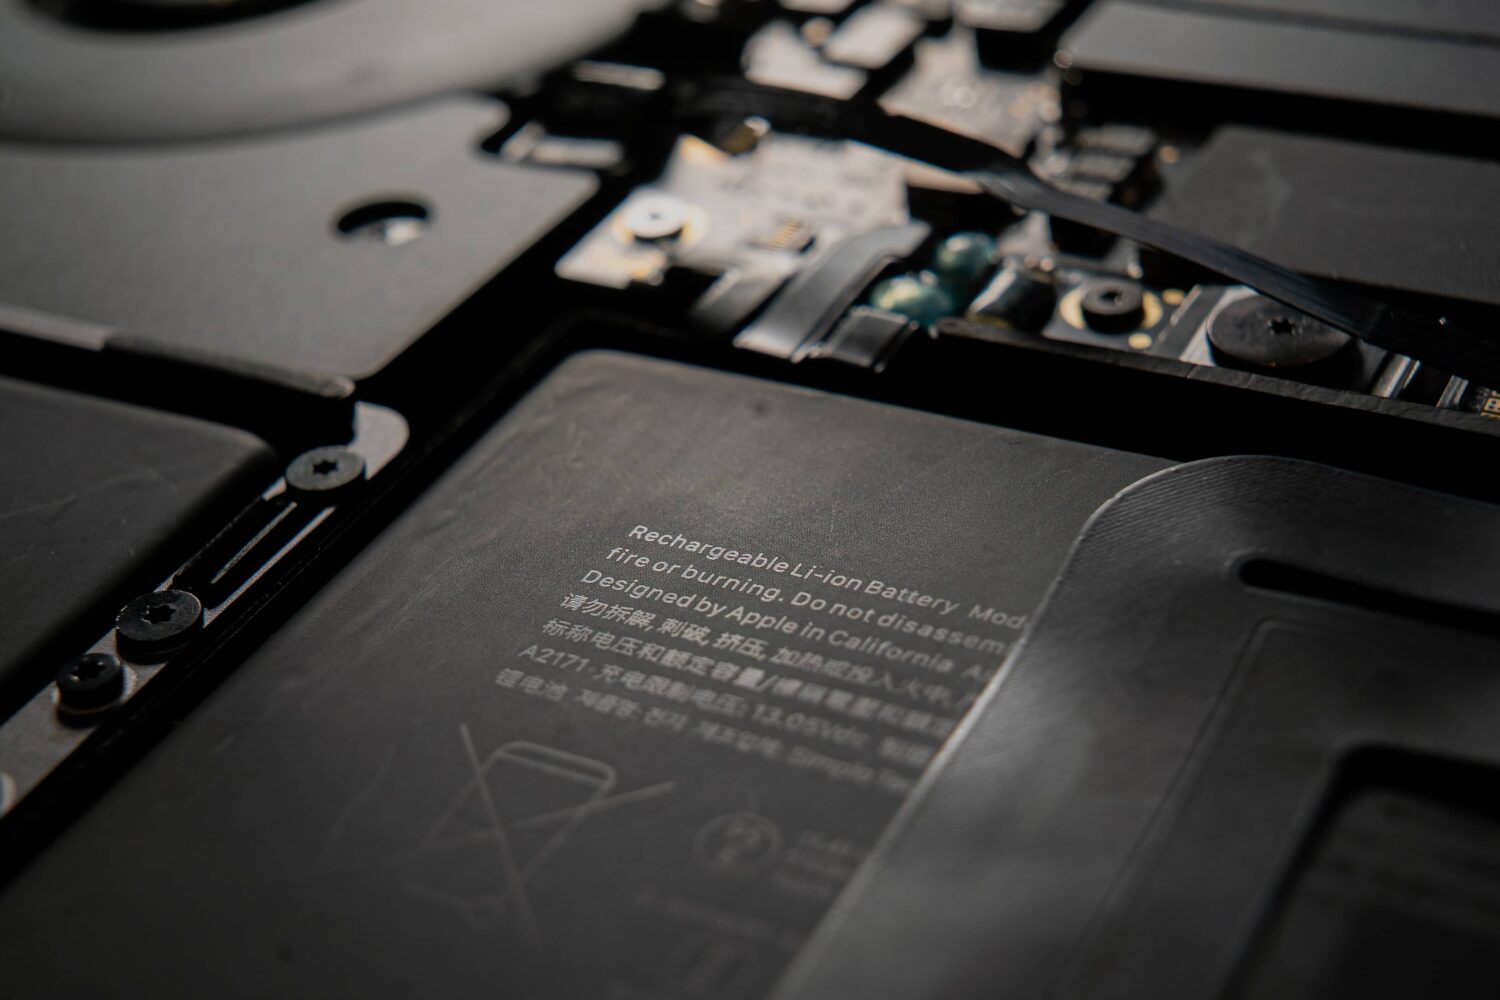 Closeup of an internal battery in Apple's MacBook laptop